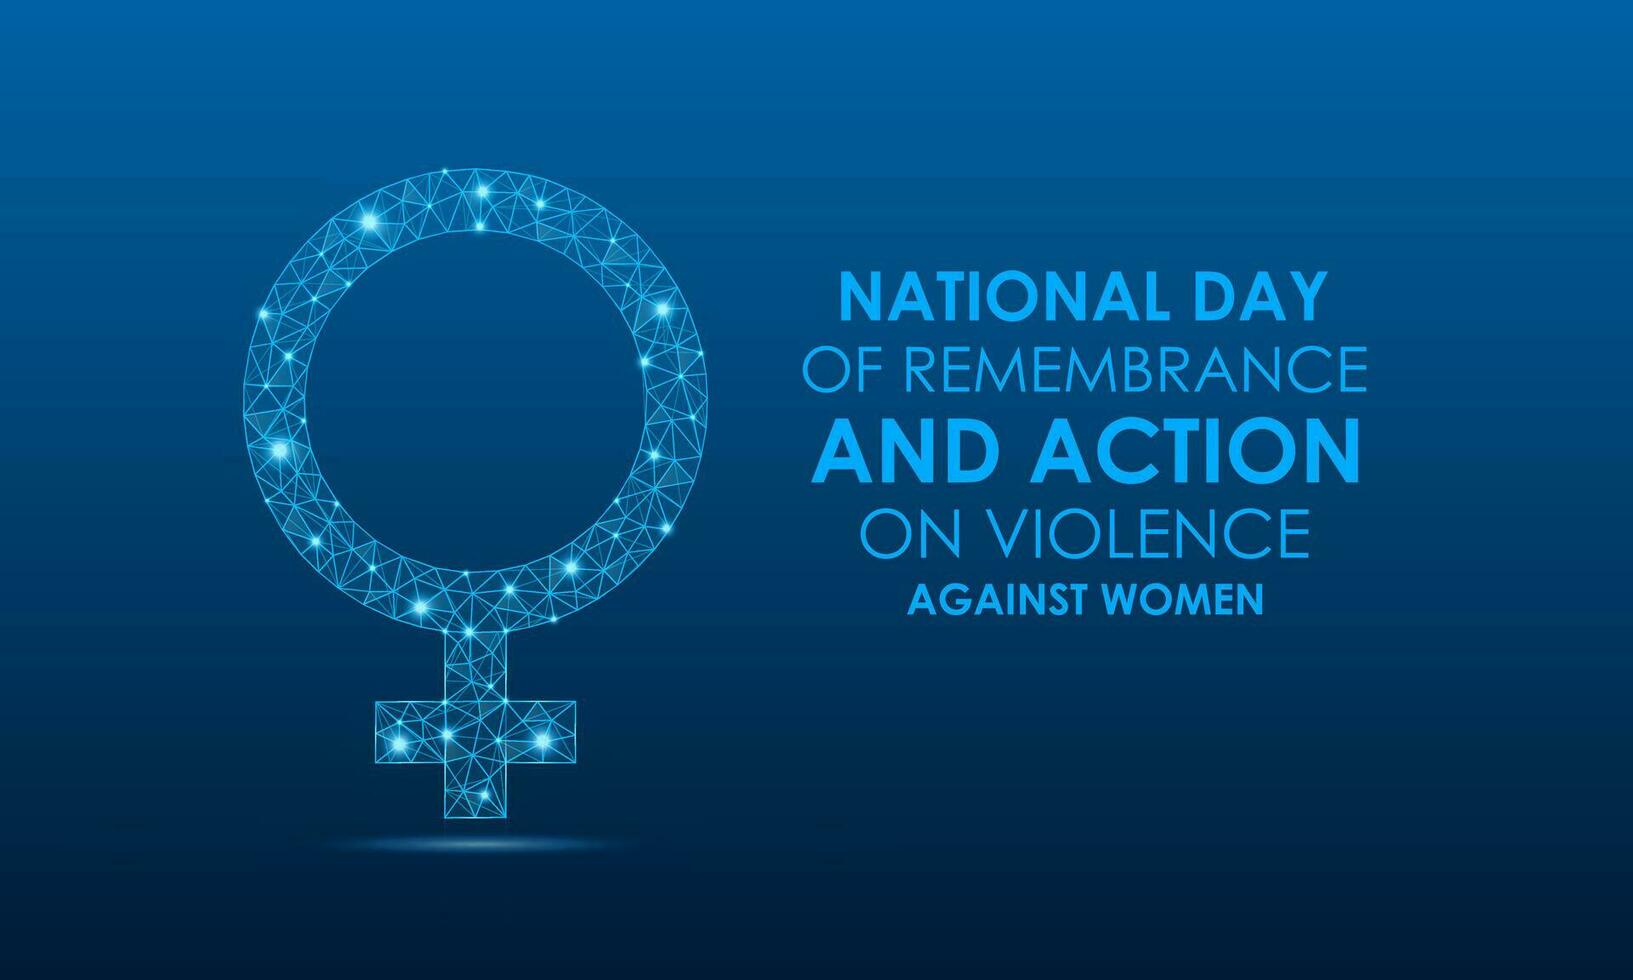 nationale journée de souvenir et action sur la violence contre femmes. décembre 6. vecteur illustration.